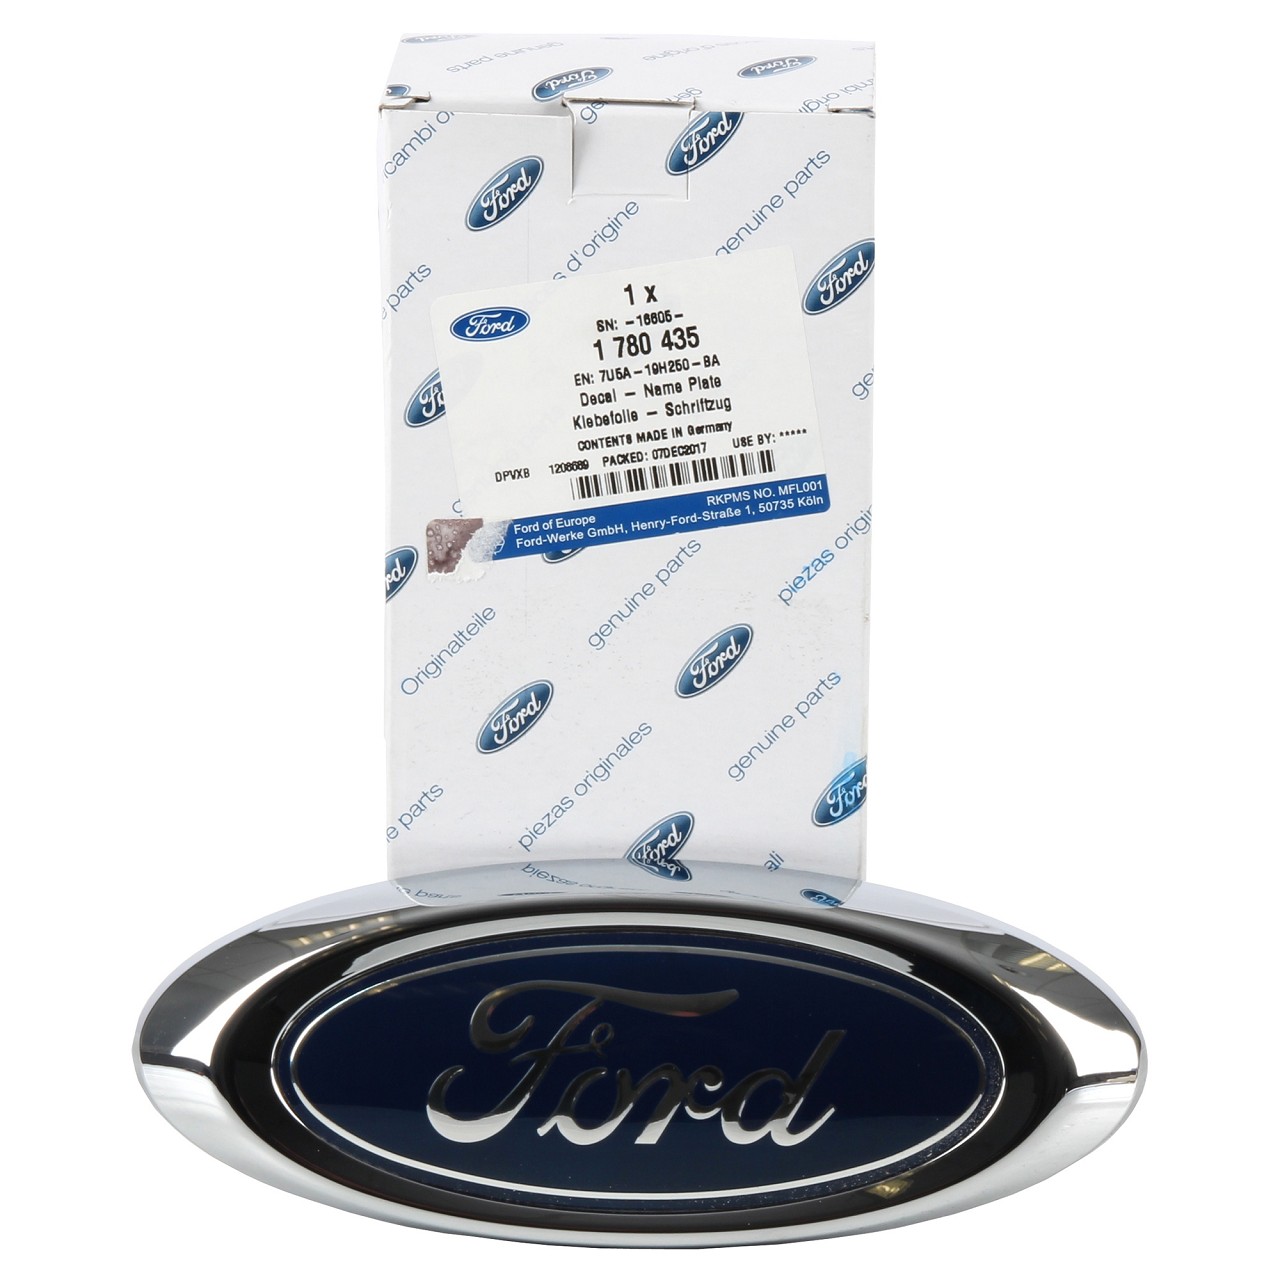 ORIGINAL Ford Emblem Schriftzug Oval S-Max Galaxy WA6 Mondeo IV hinten 1780435